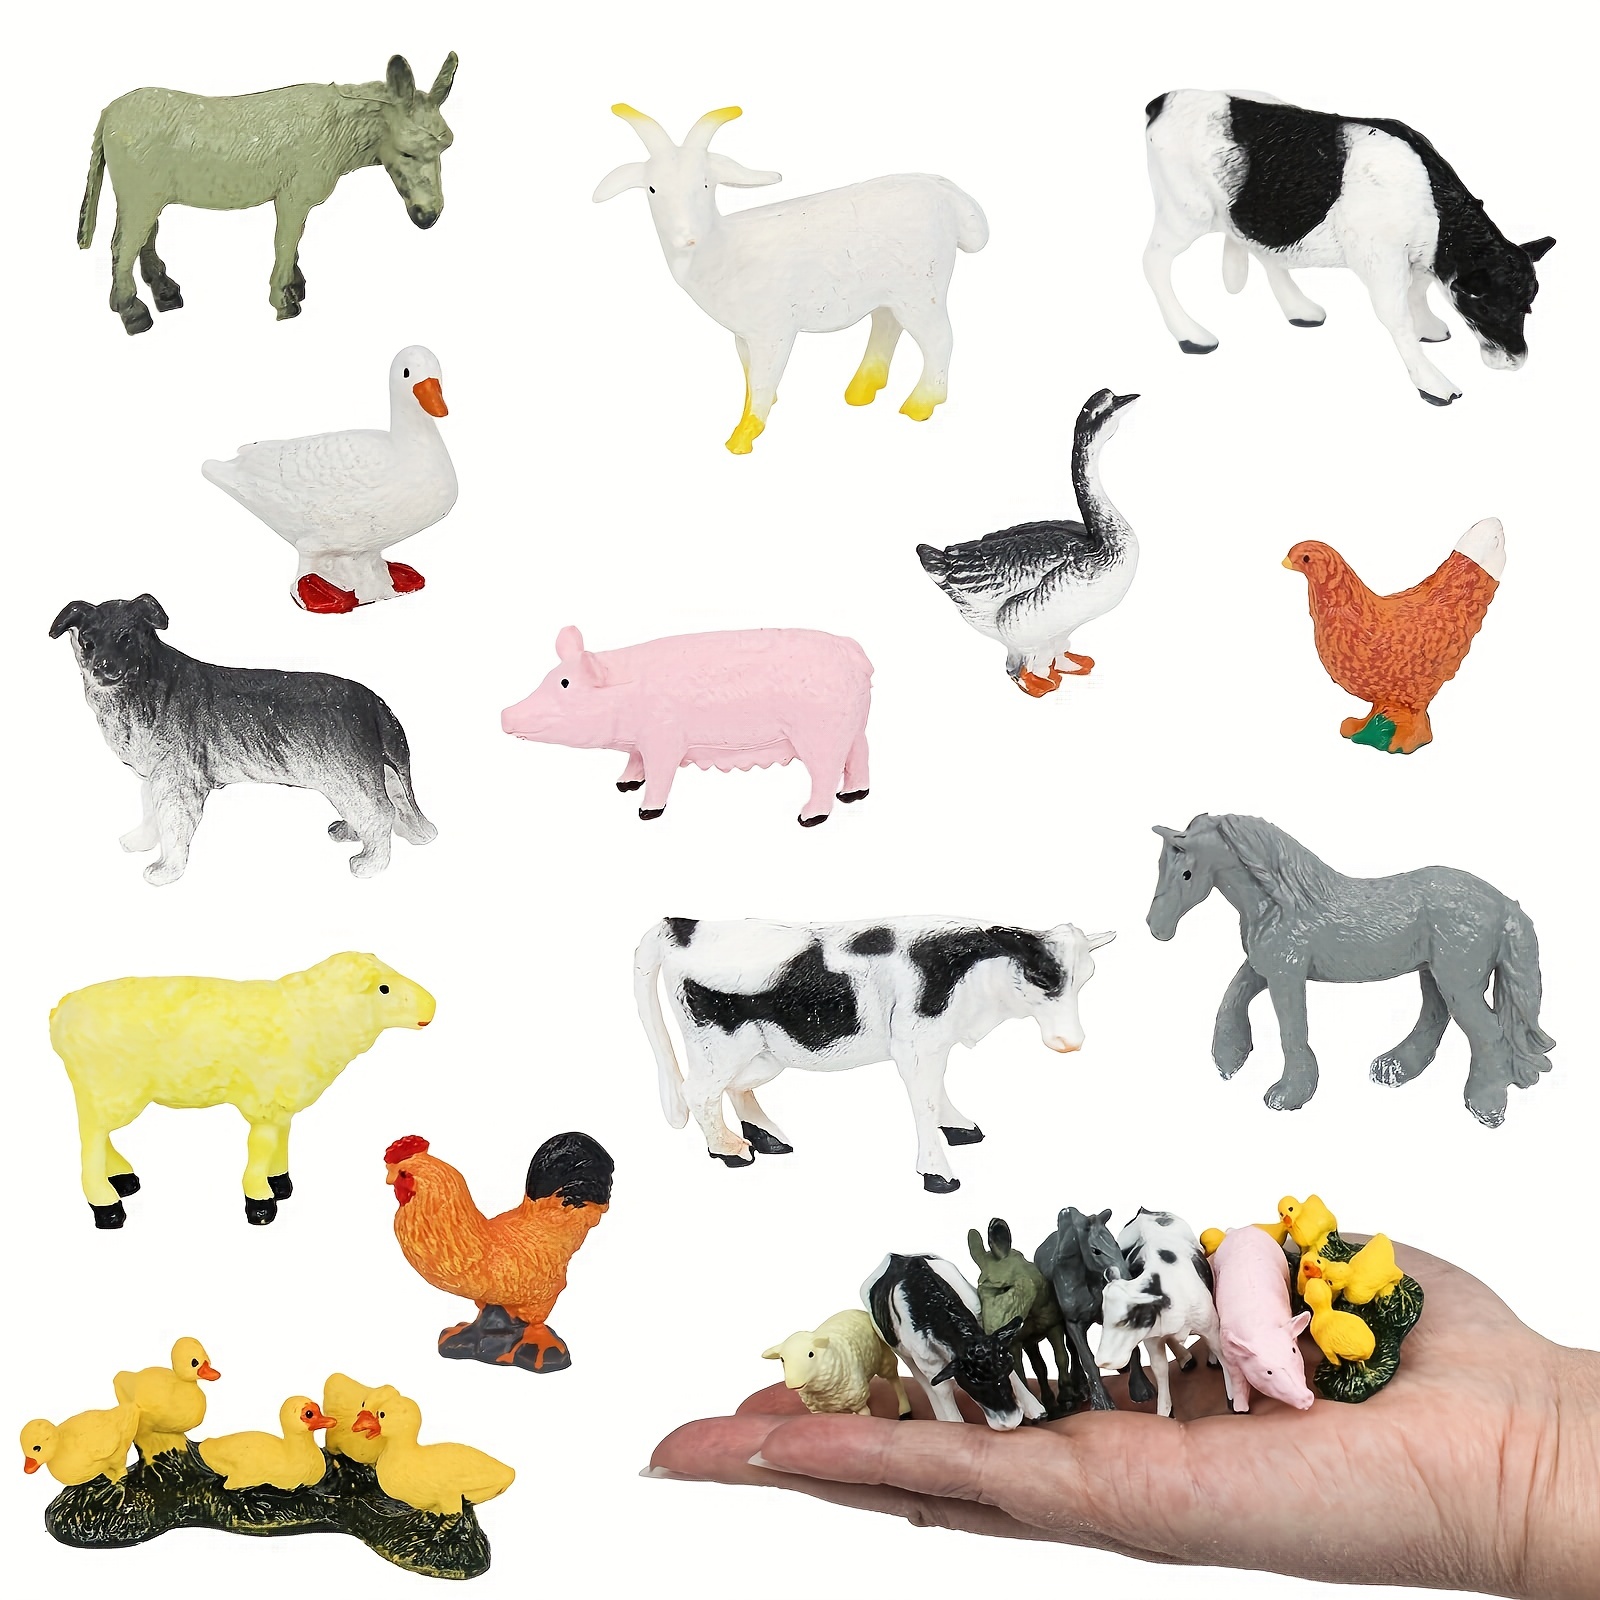 Mini Figurines D'animaux De Ferme, Détails Fins, Modèles D'animaux  Miniatures, Réalistes, Peints à La Main, Aspect Naturel Pour 3 Ans Et Plus.  